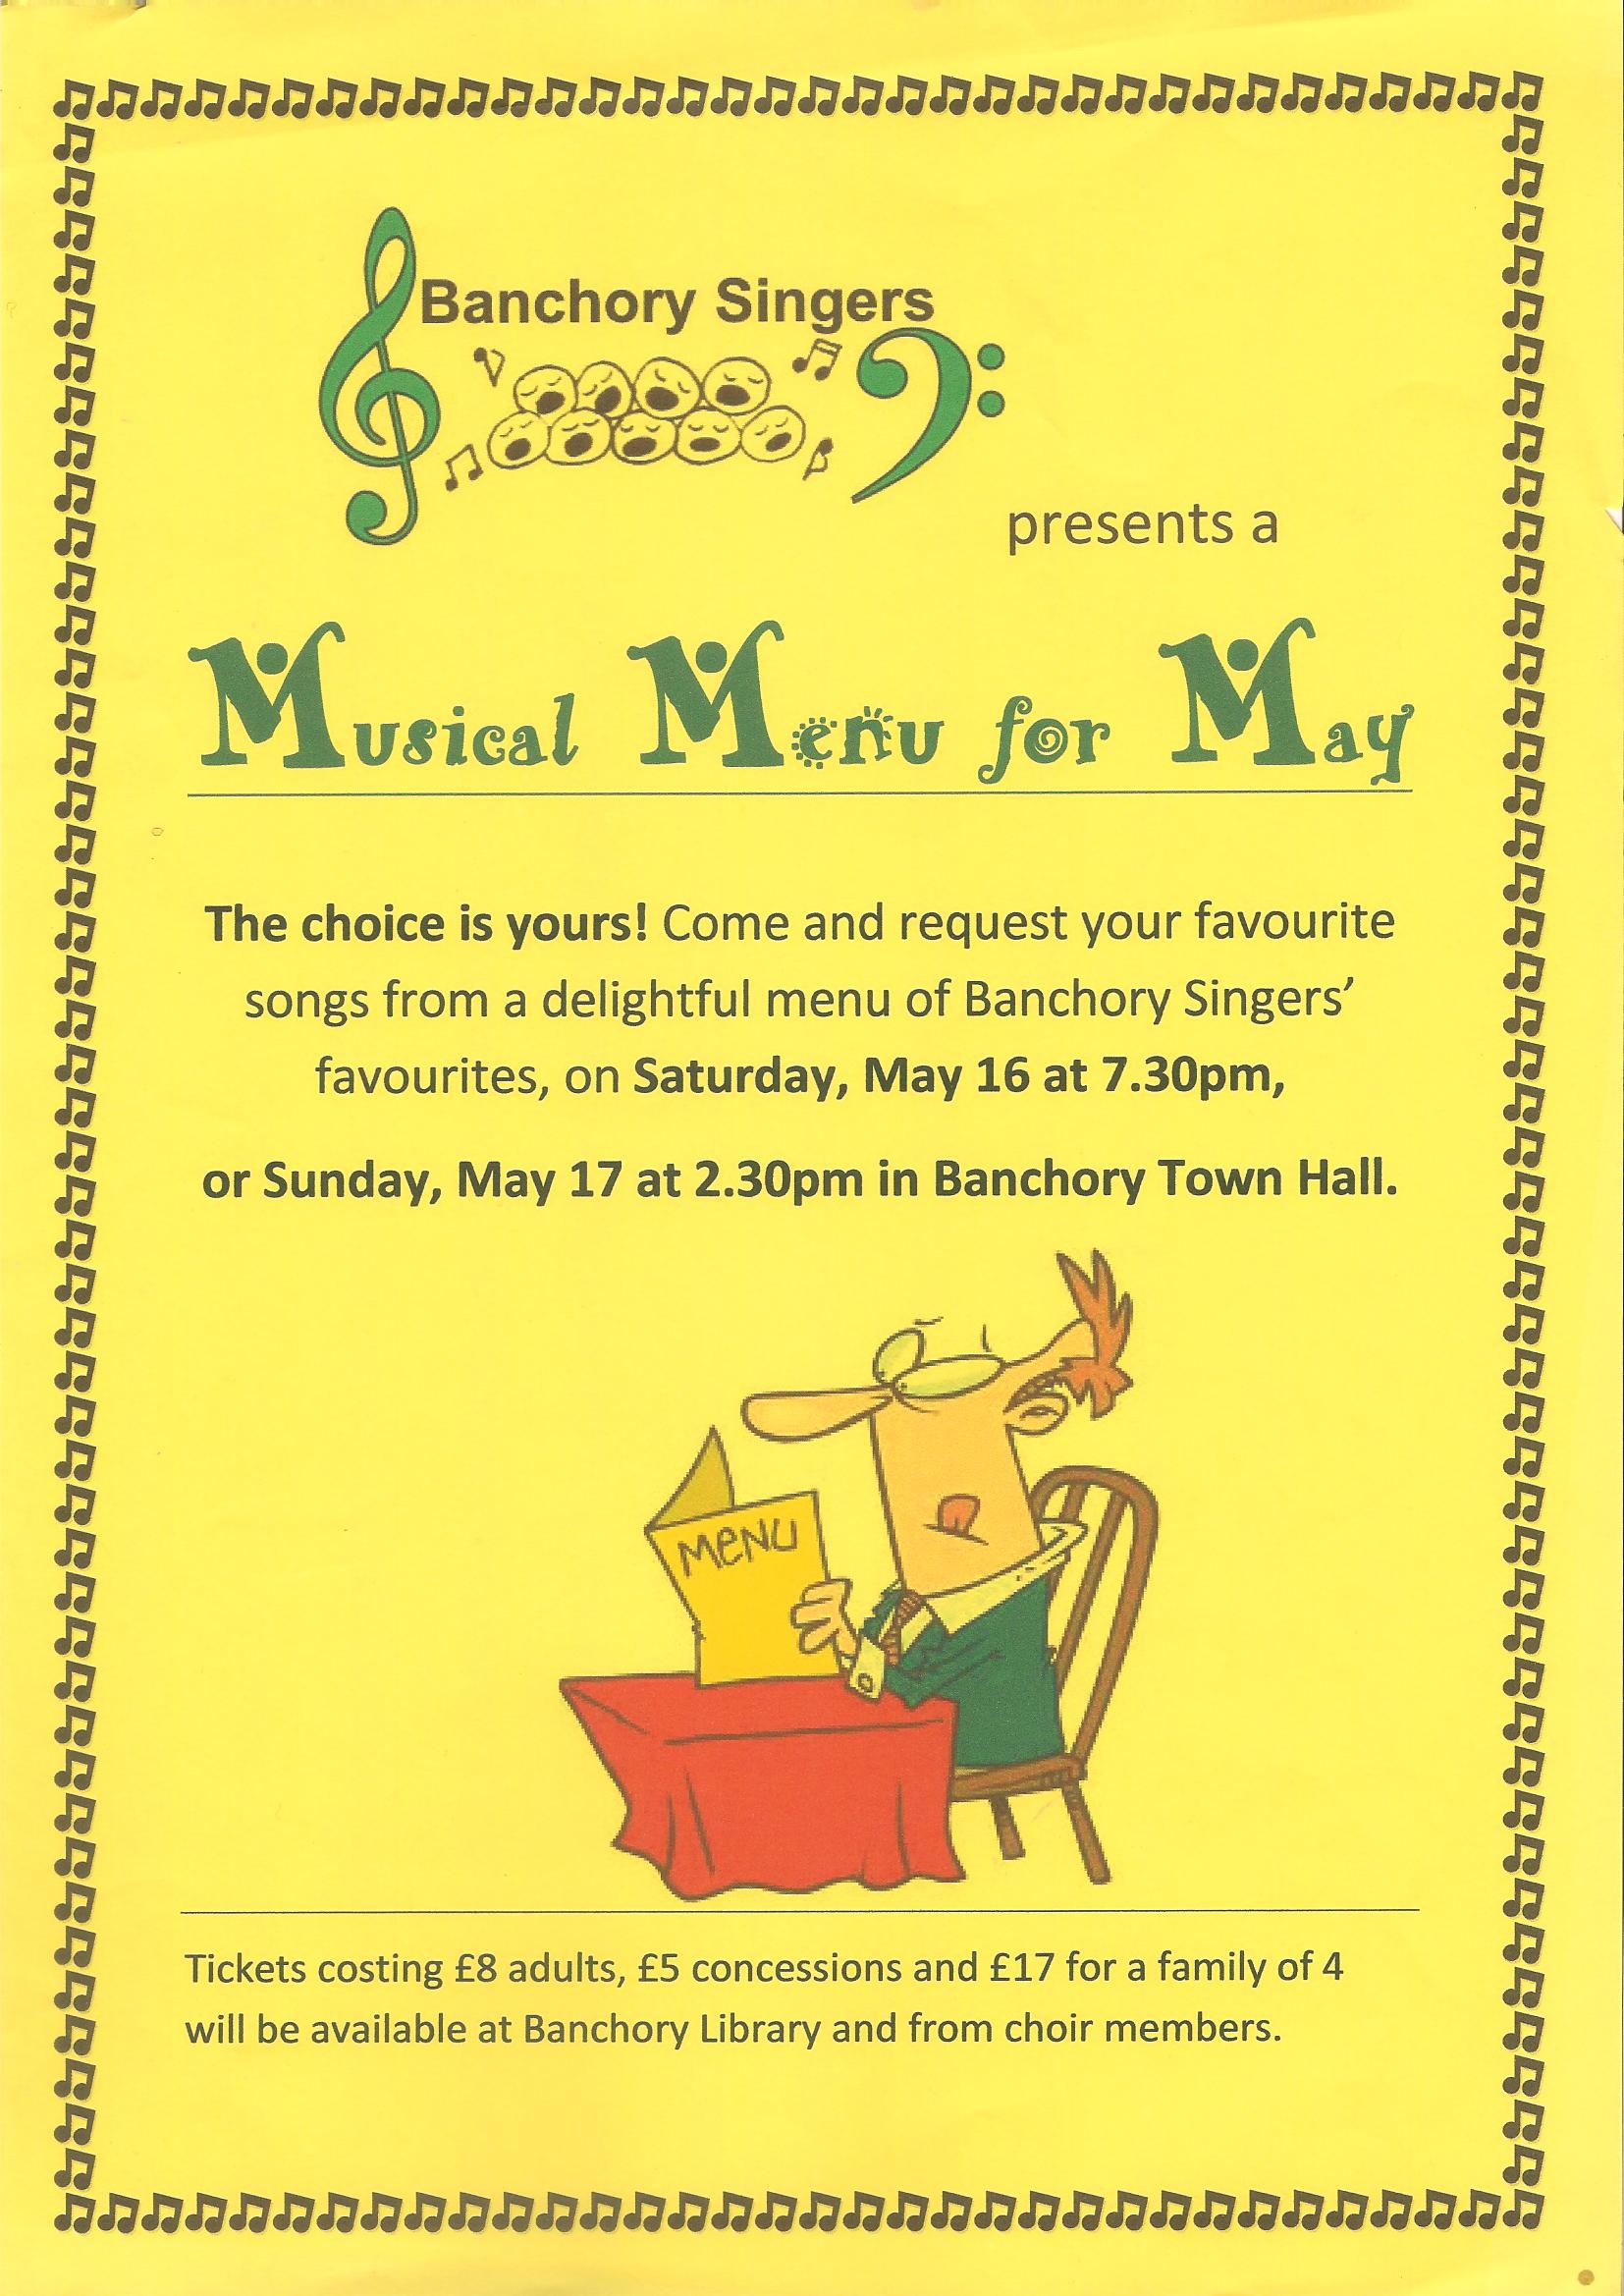 Musical Menu for May 2015